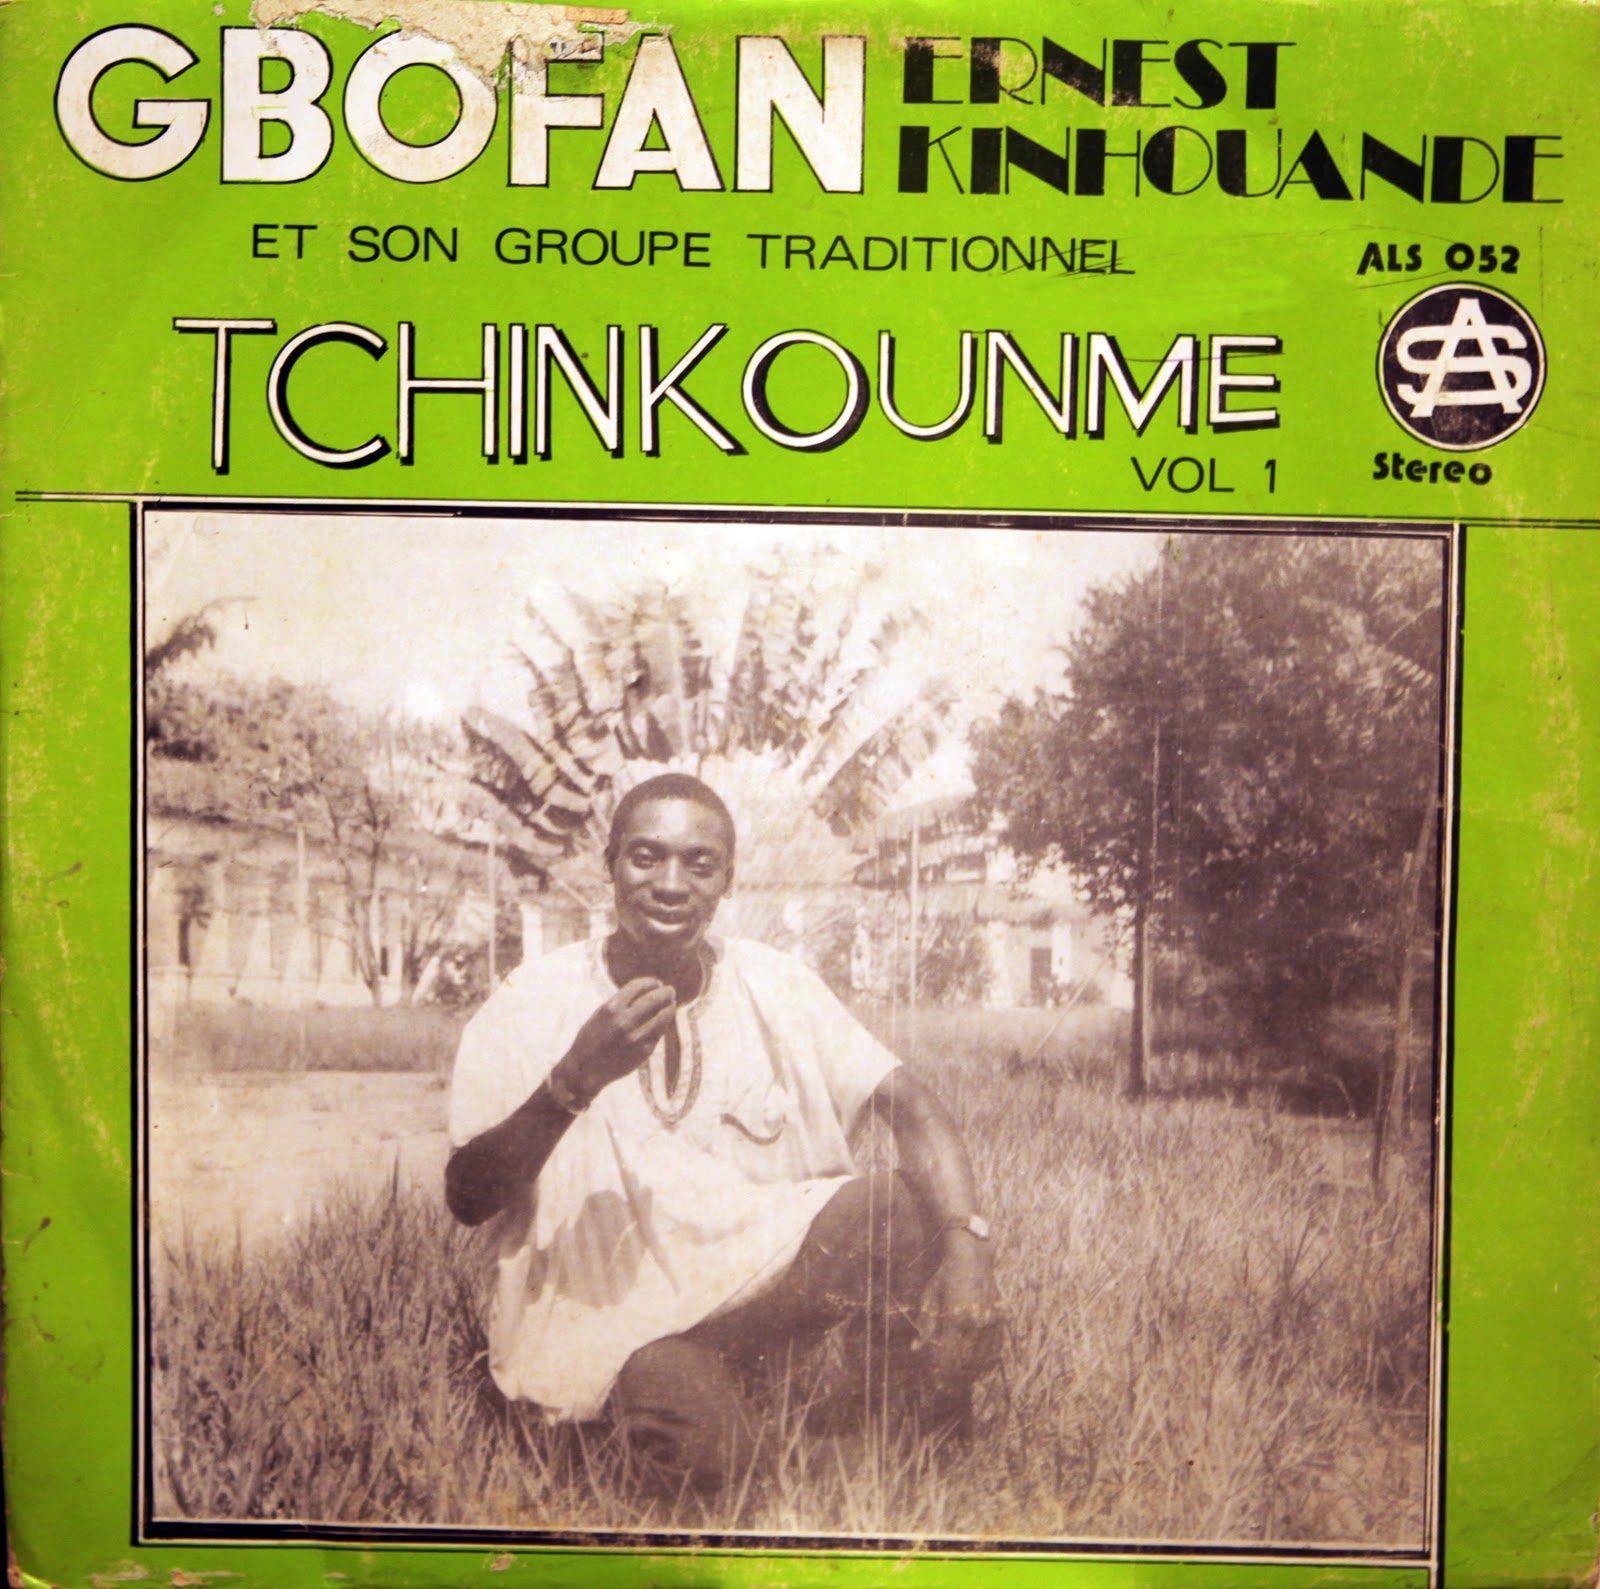  Gbofan Ernest Kinhouande (ALS 52/1978) Gbofan+Ernest+Kinhouande+%2528front%2529